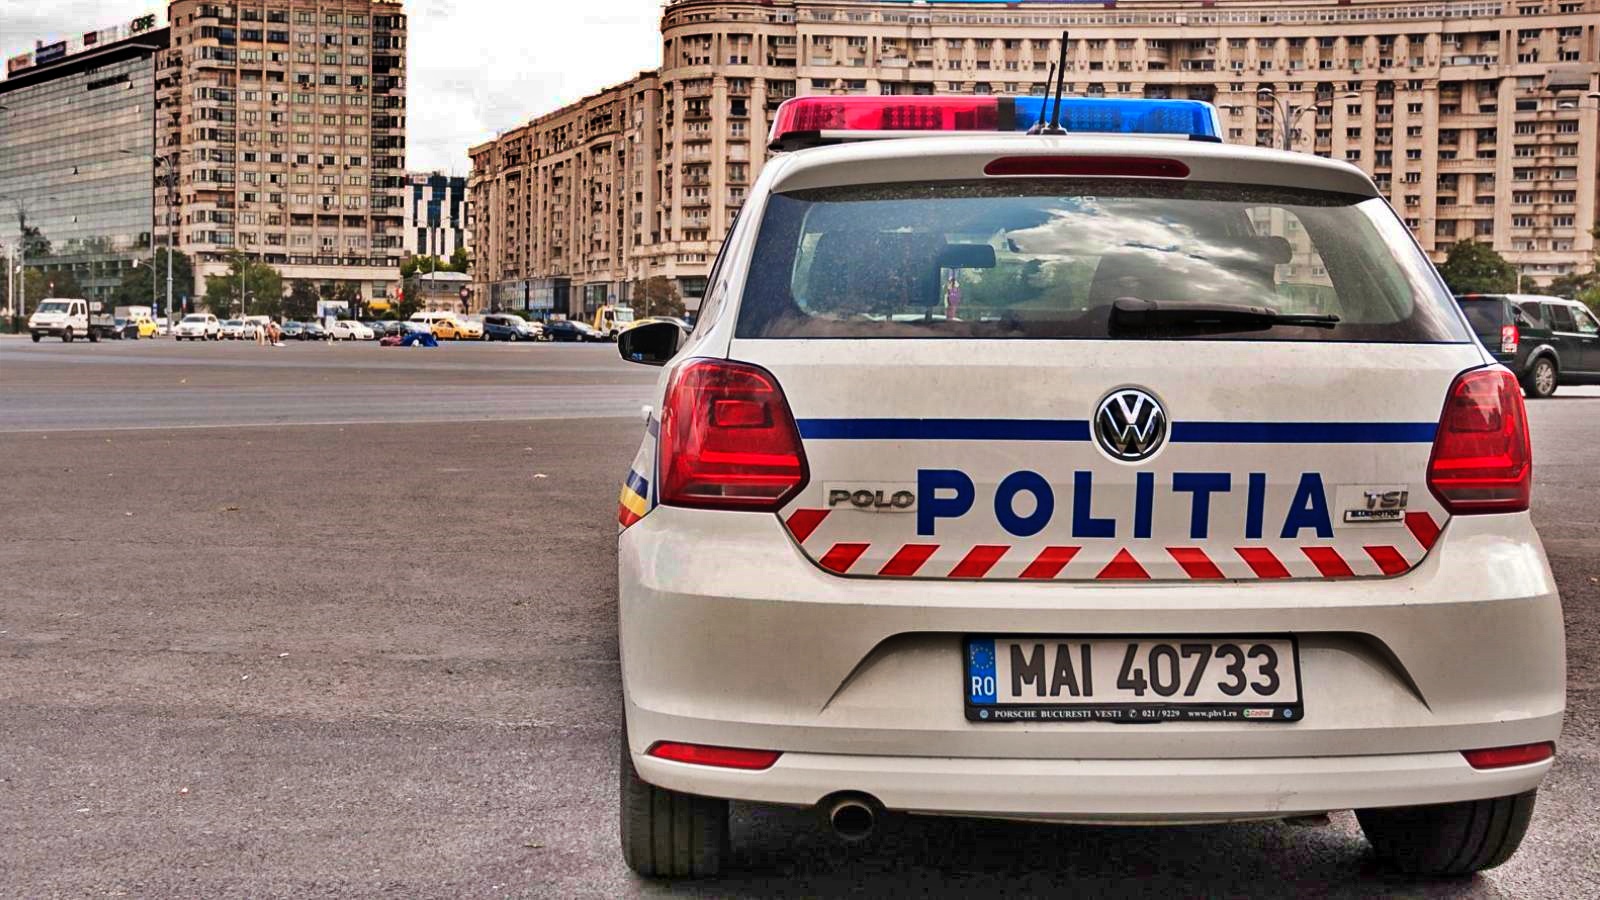 Polizia rumena: avvertimento sugli scooter elettrici